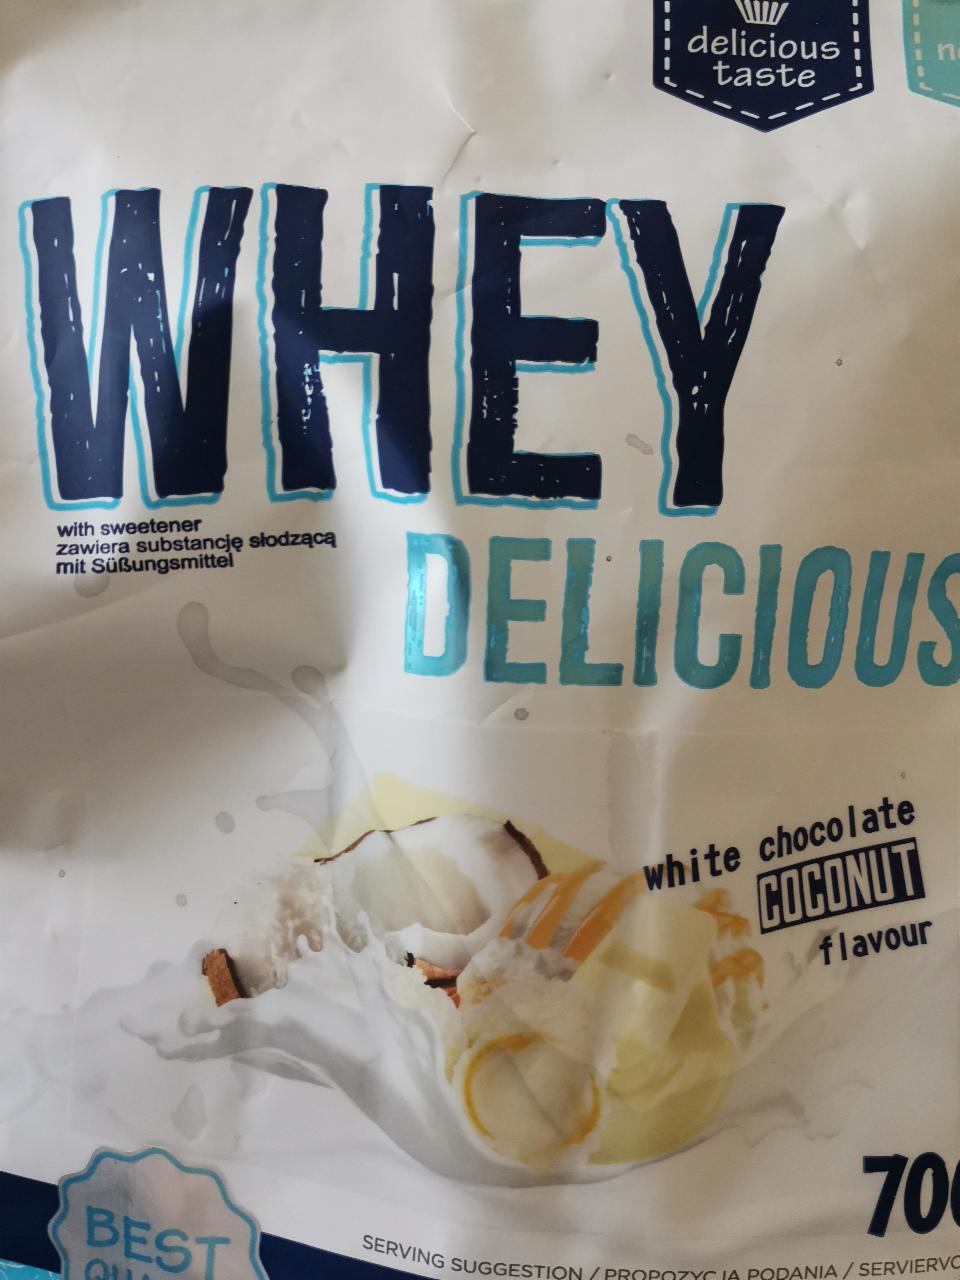 Fotografie - Whey Delicious White chocolate Coconut flavour Allnutrition